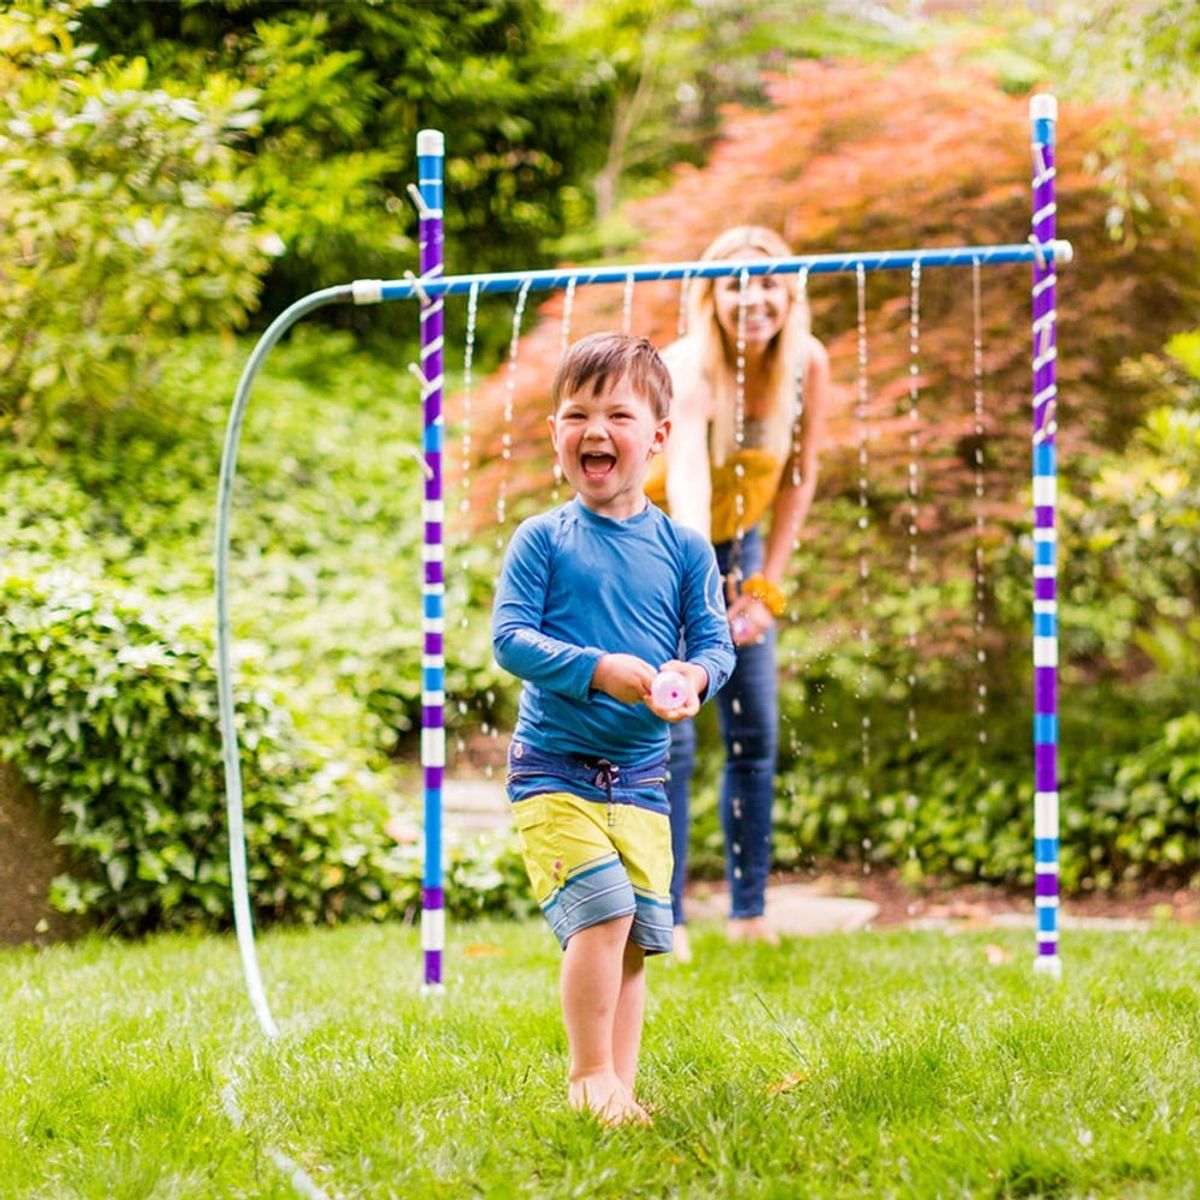 3 Easy Backyard Activities to Help Beat the Summer Heat